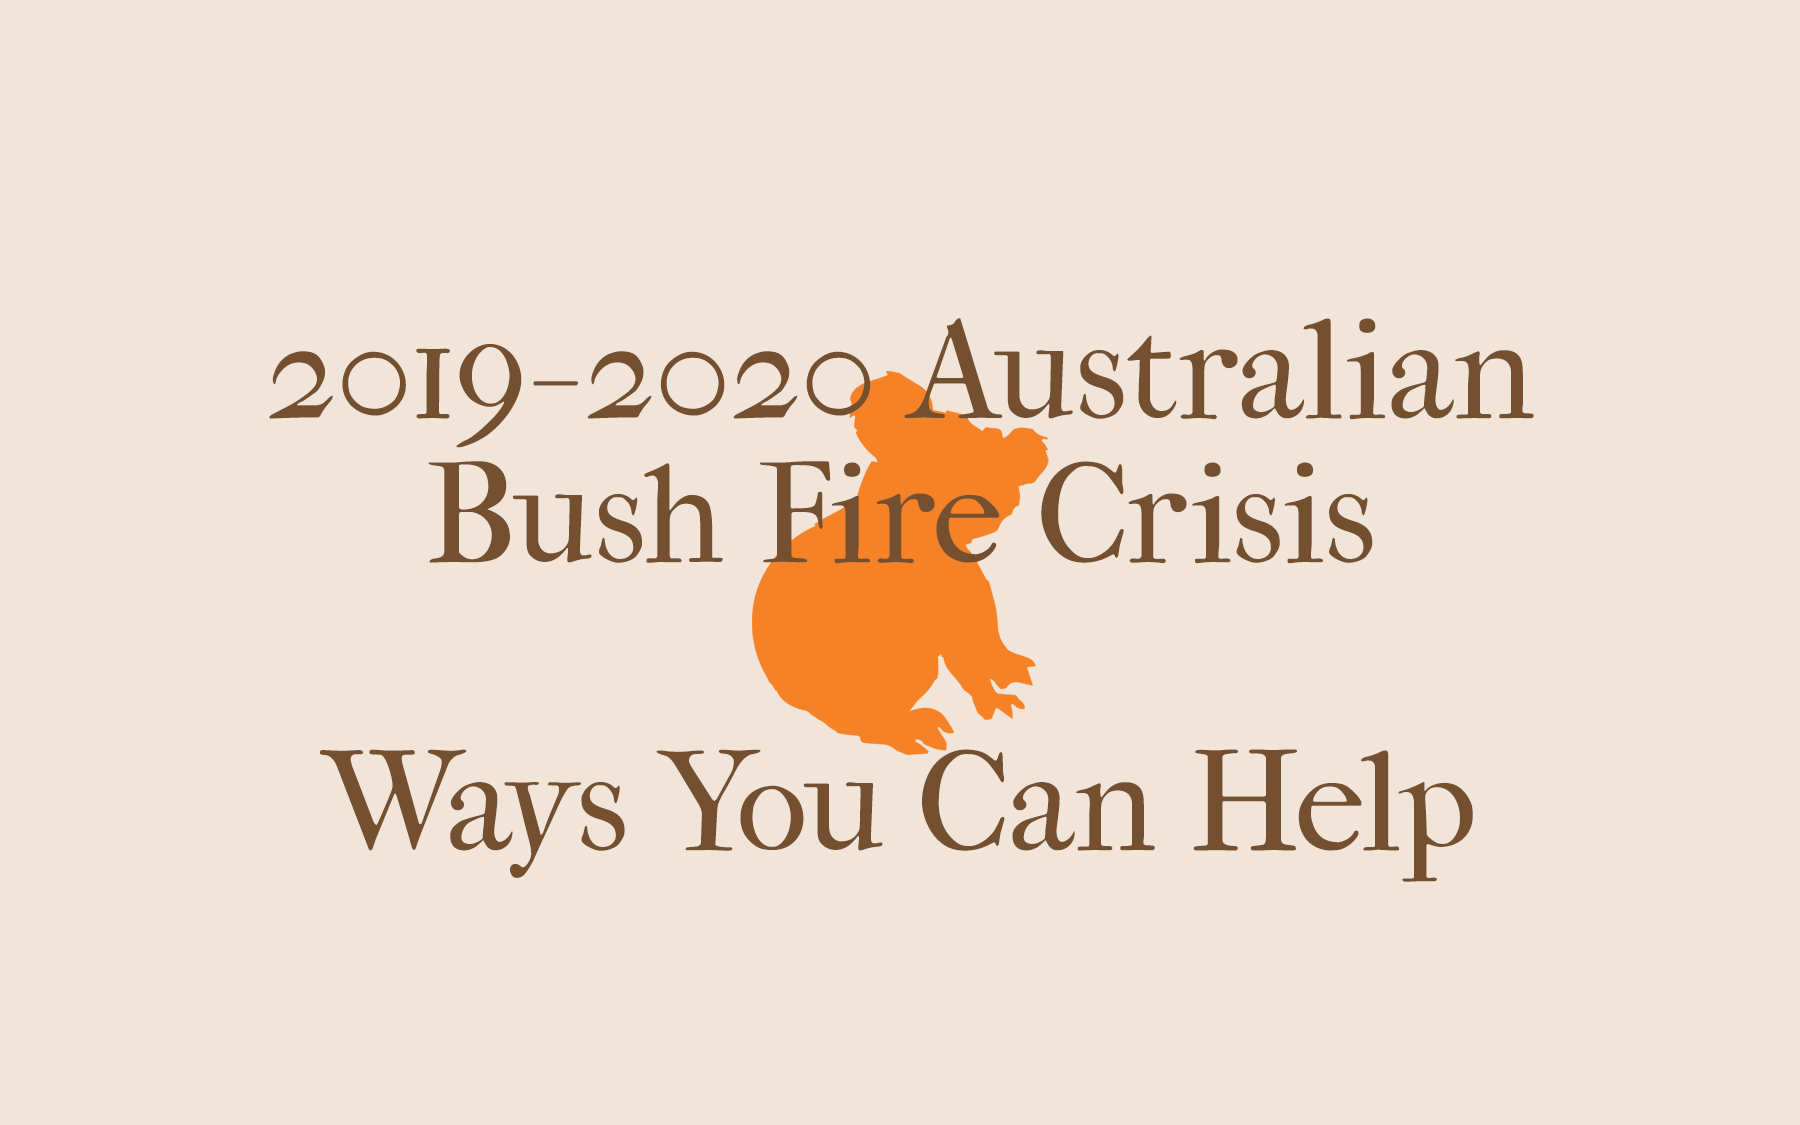 2019-2020 Australian Bush Fire Crisis - Ways You Can Help